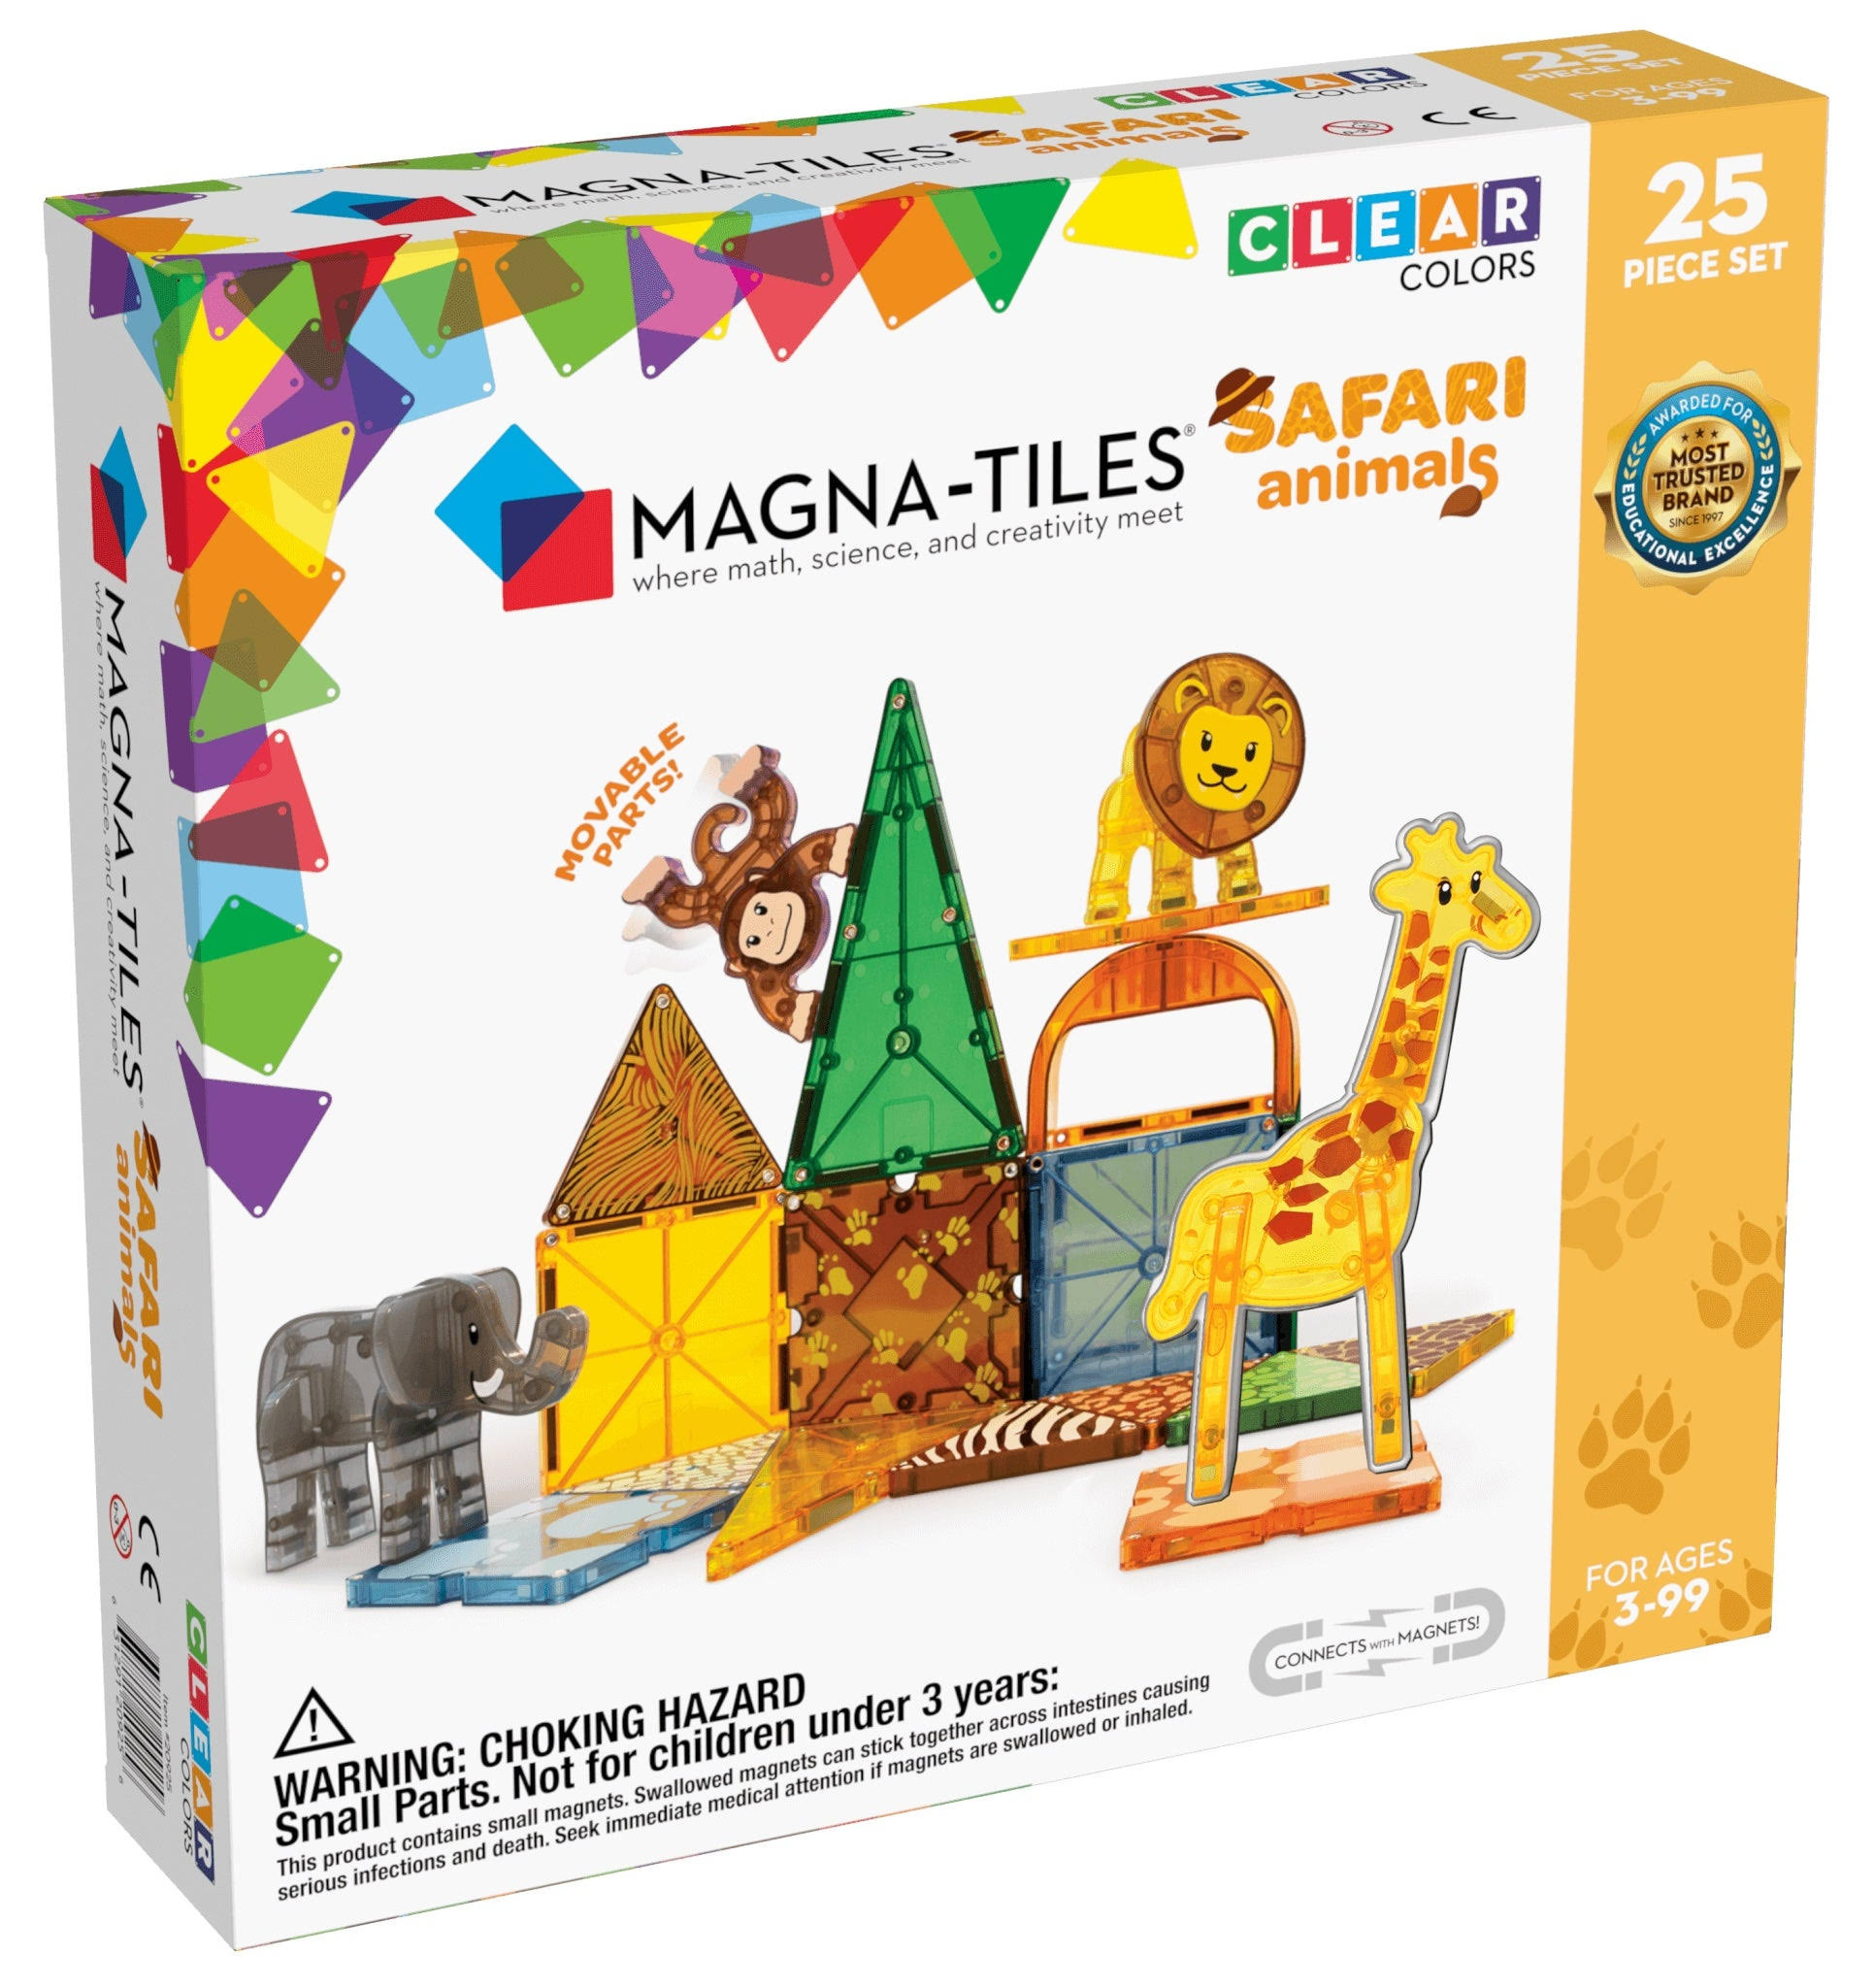 Magna-Tiles Safari Animals 25 Piece Set Clear Colors